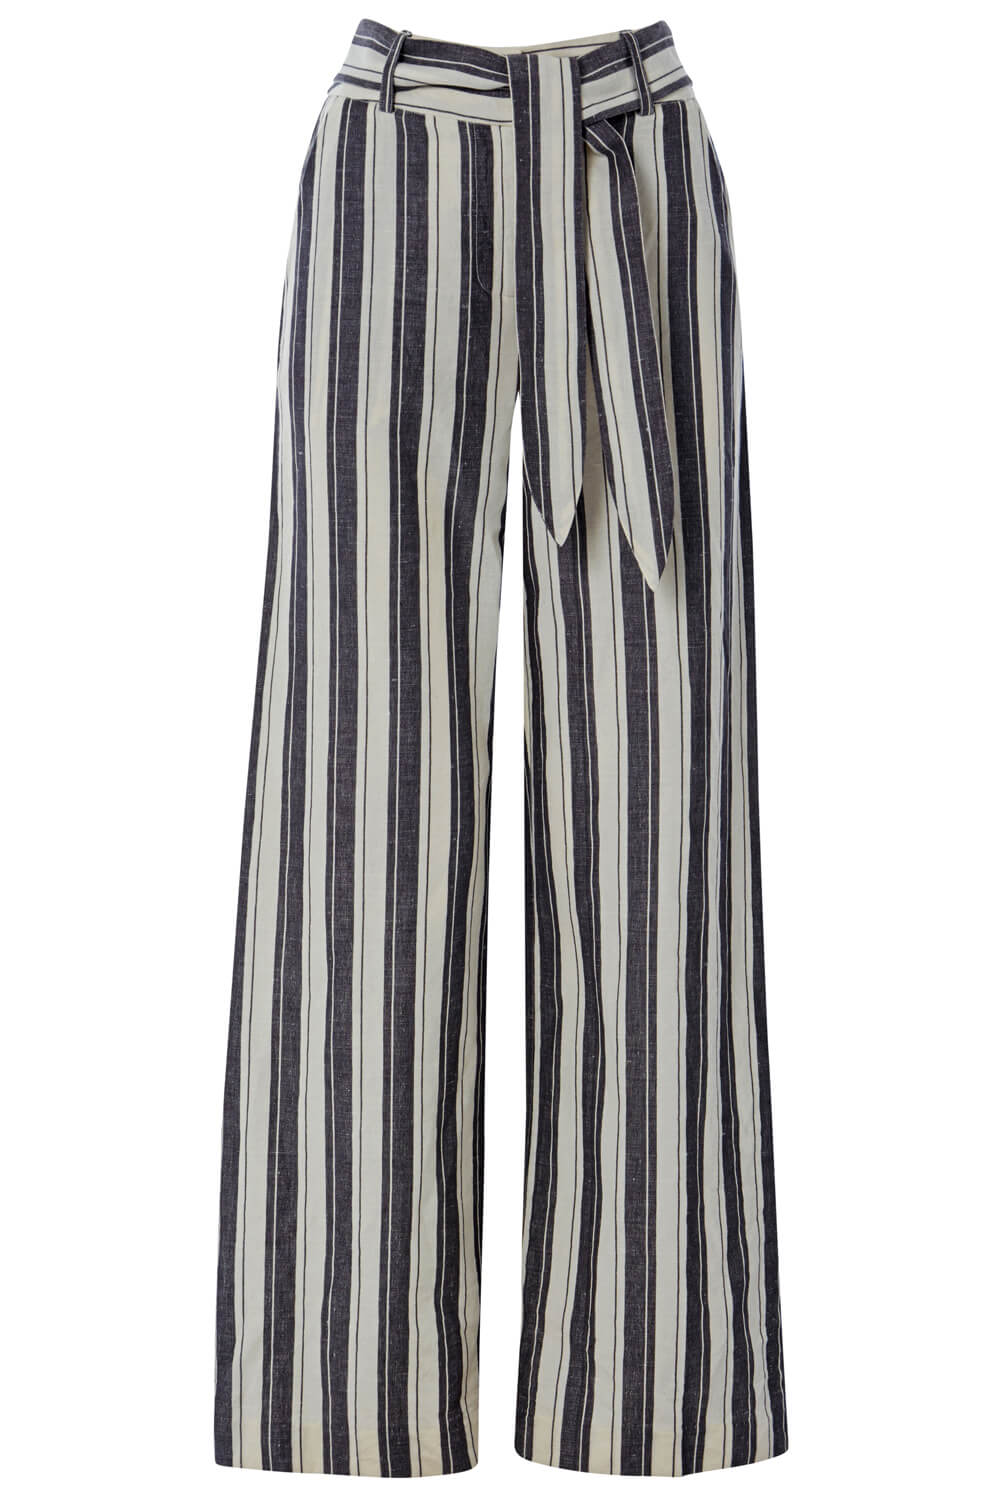 Grey Stripe Linen Wide Leg Trousers, Image 4 of 4